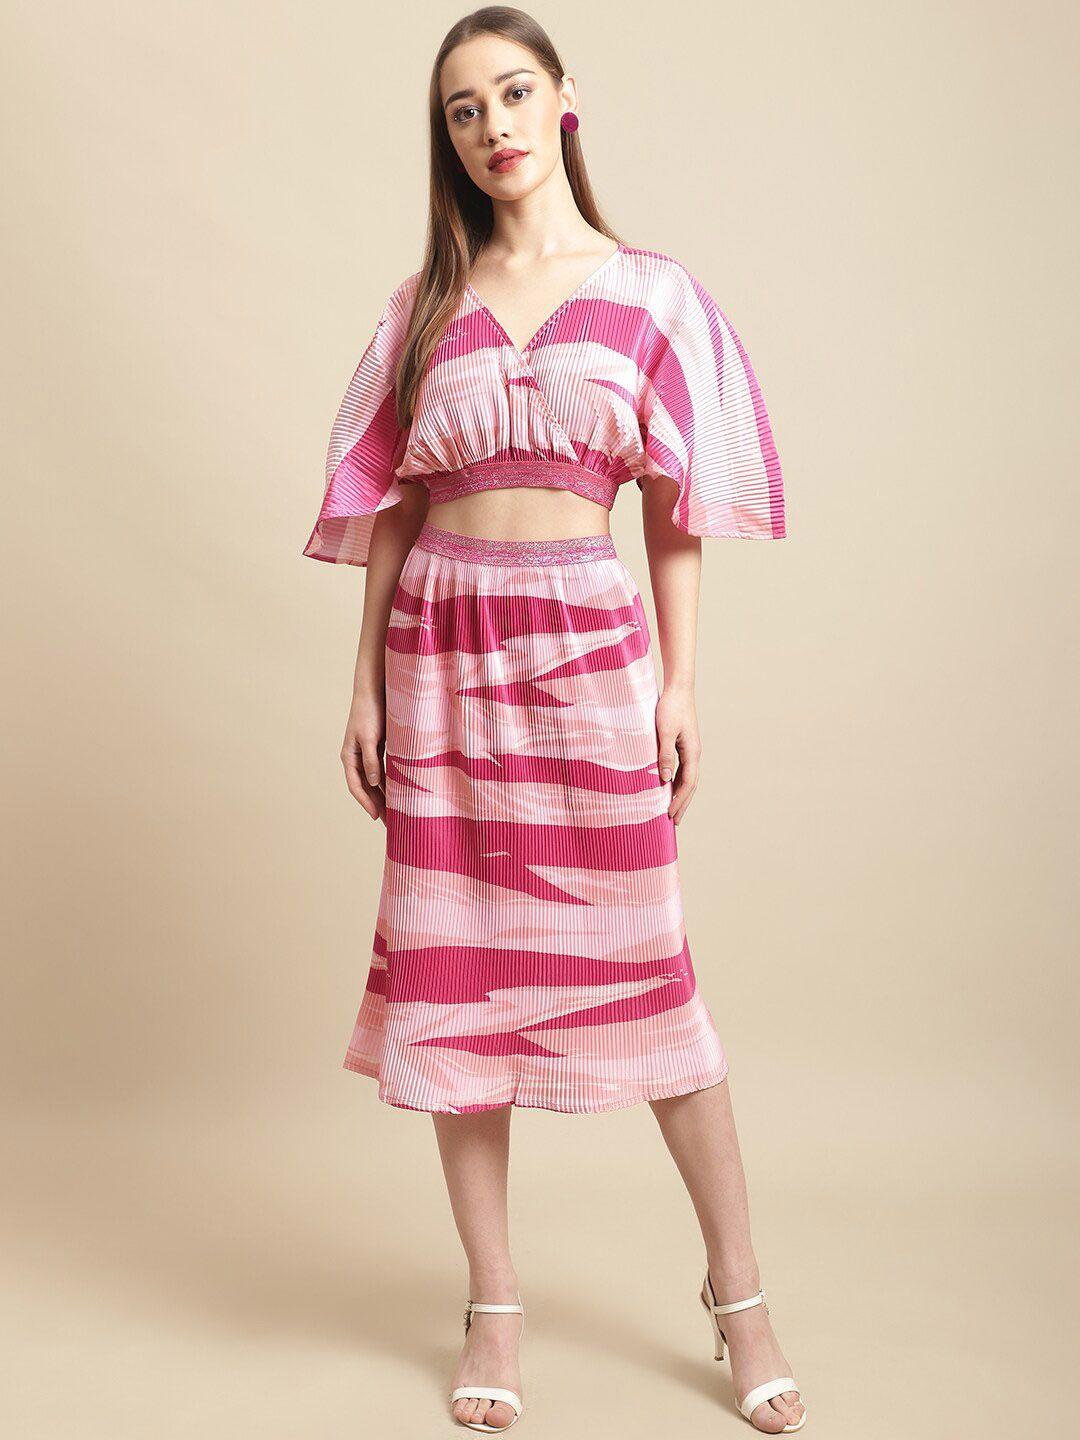 blanc9 women abstract printed kimino top with midi-length skirt